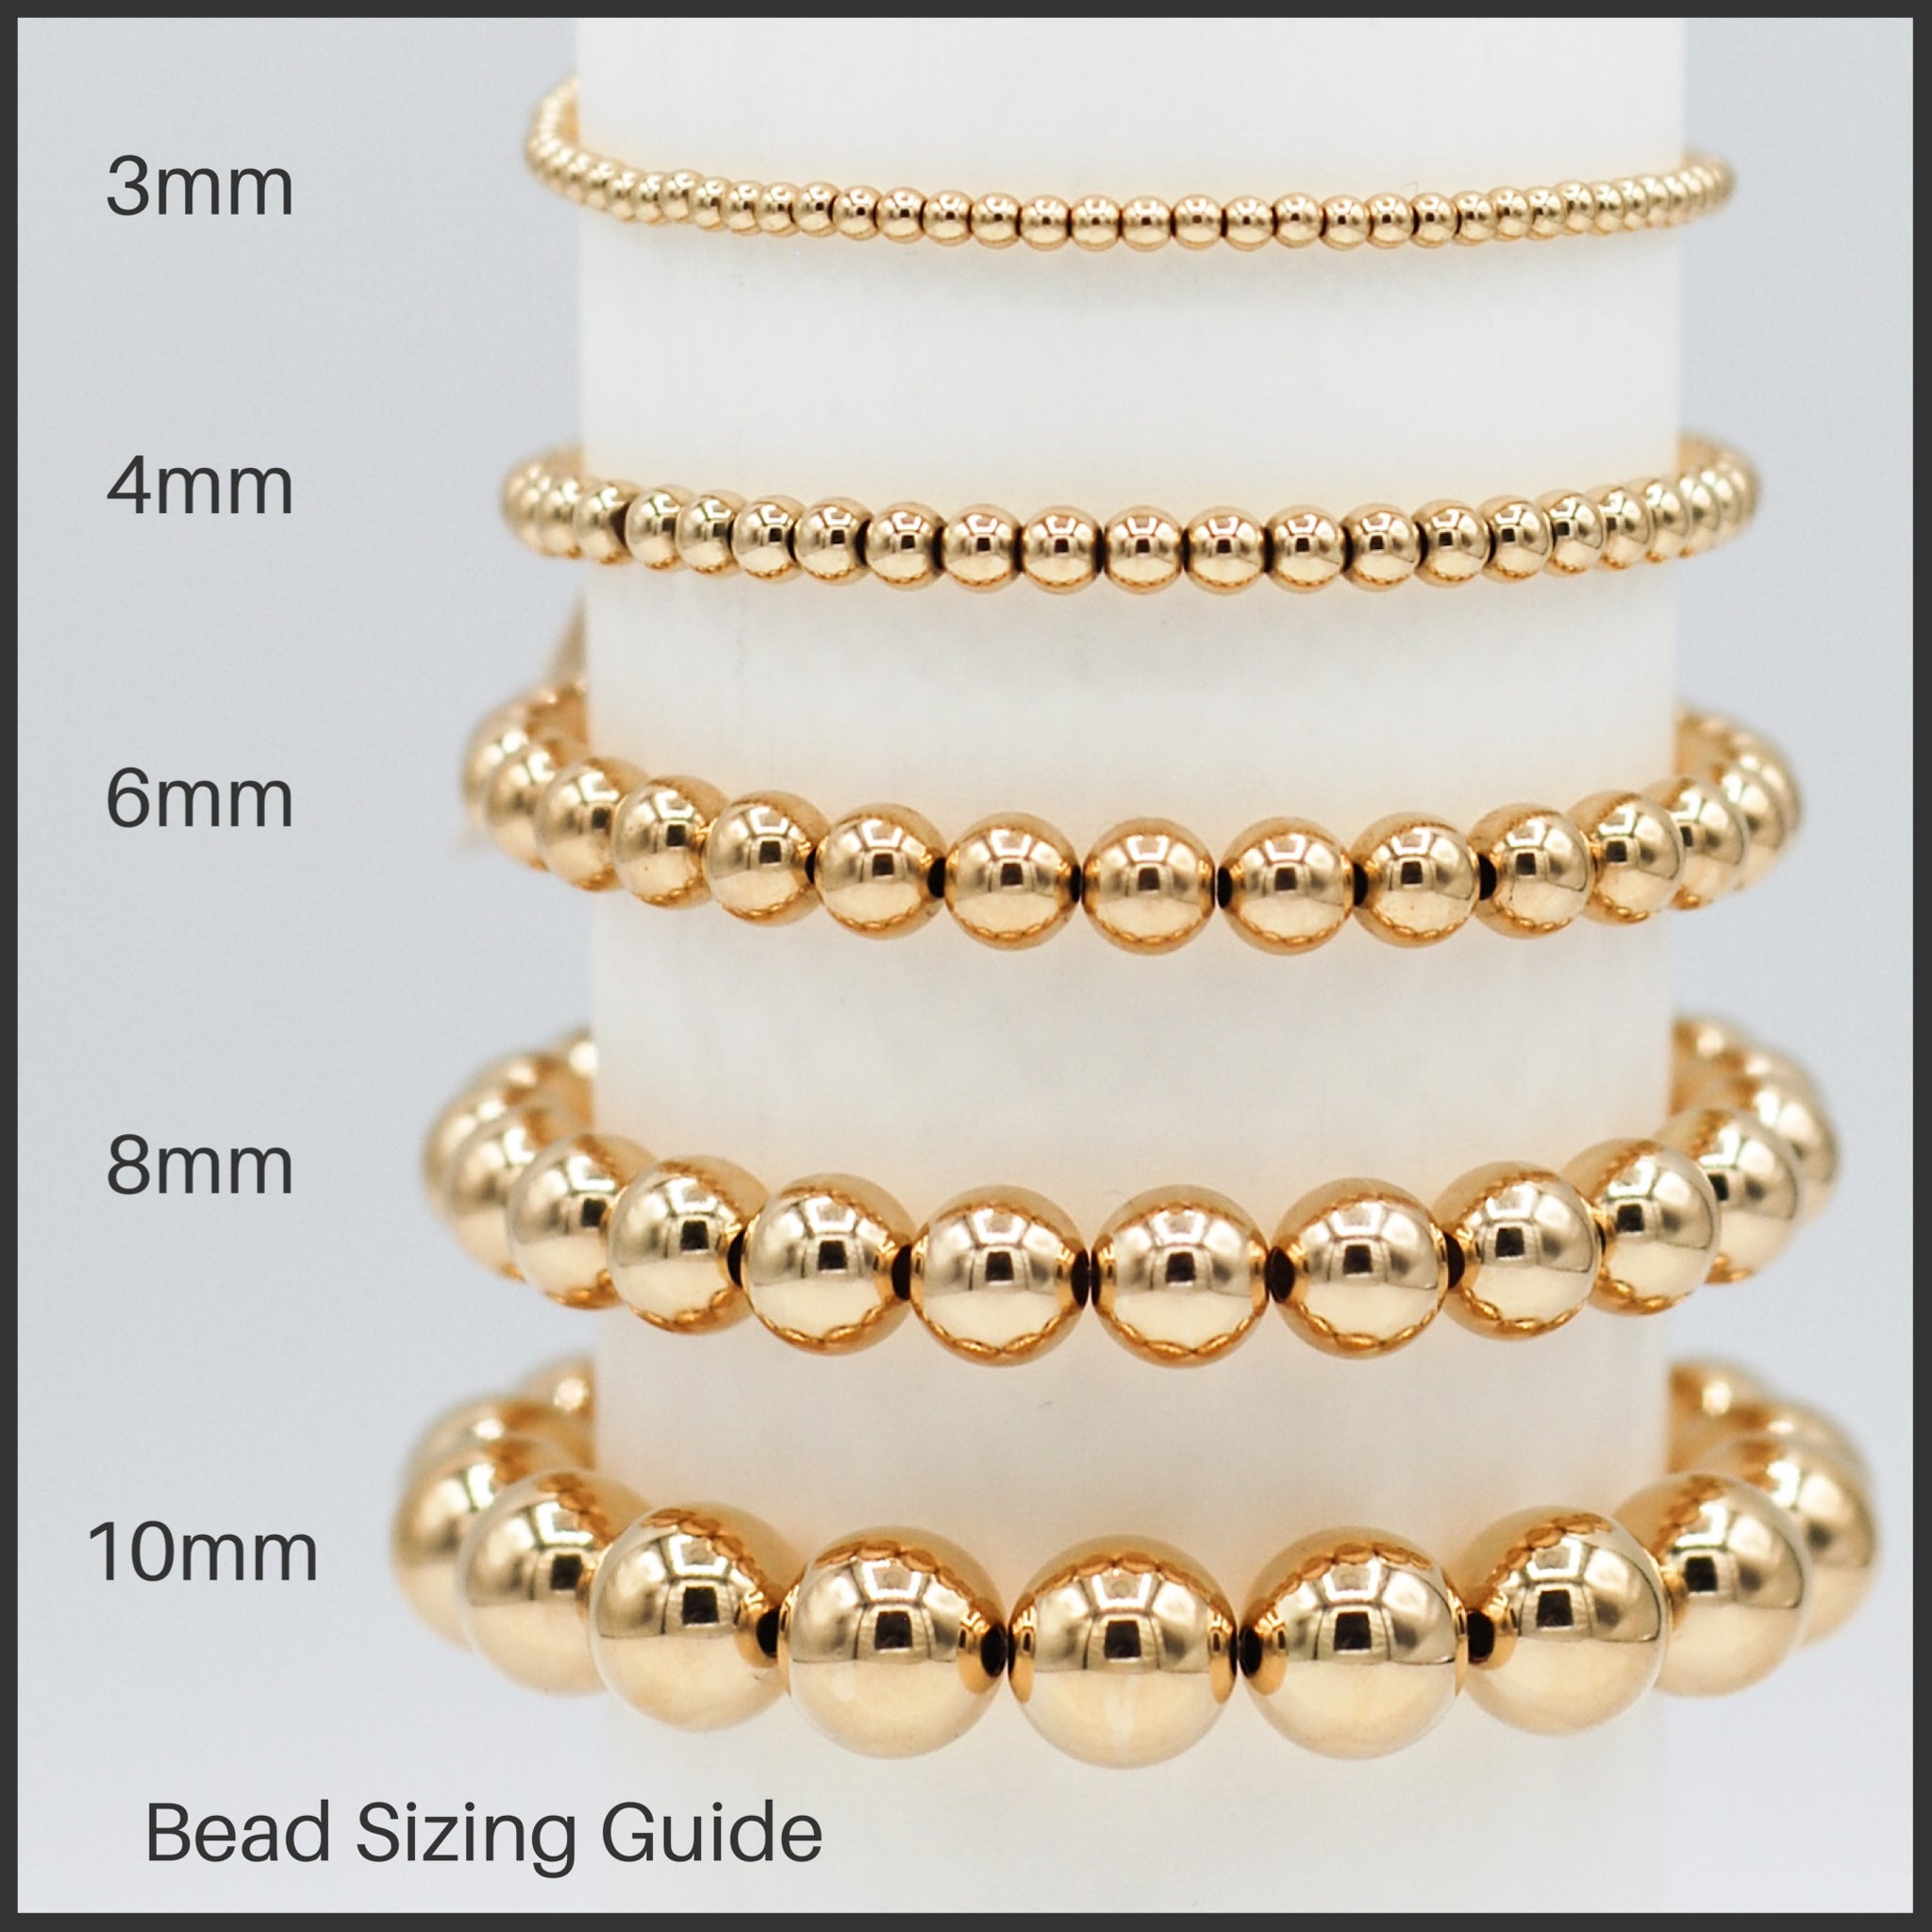 Matte Black Onyx Heart & 14k Gold Filled Bracelet Set